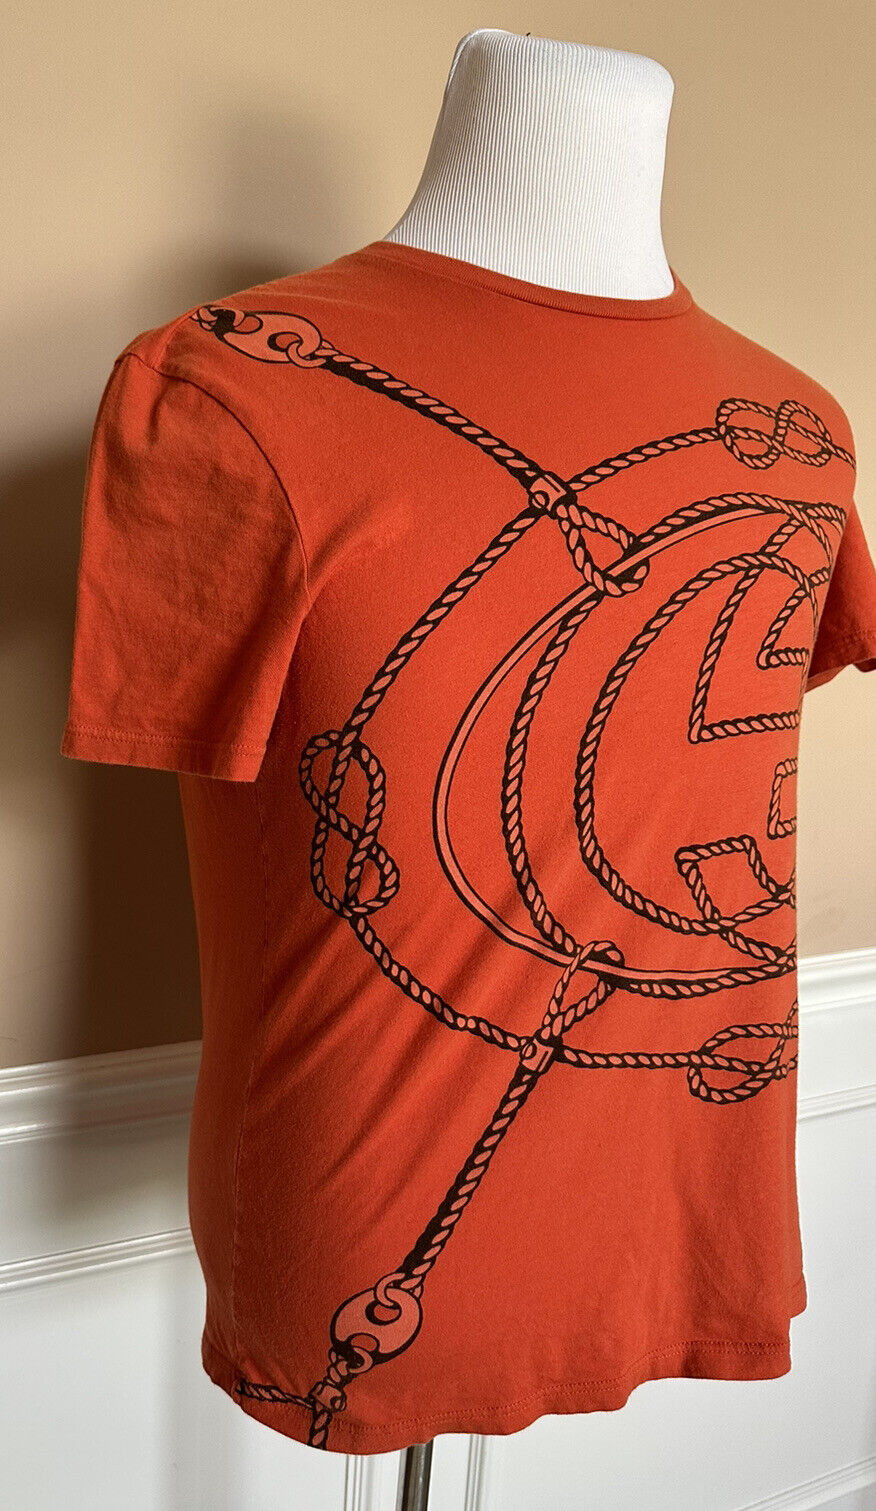 Оранжевая футболка с короткими рукавами и принтом Gucci GG, средний размер 